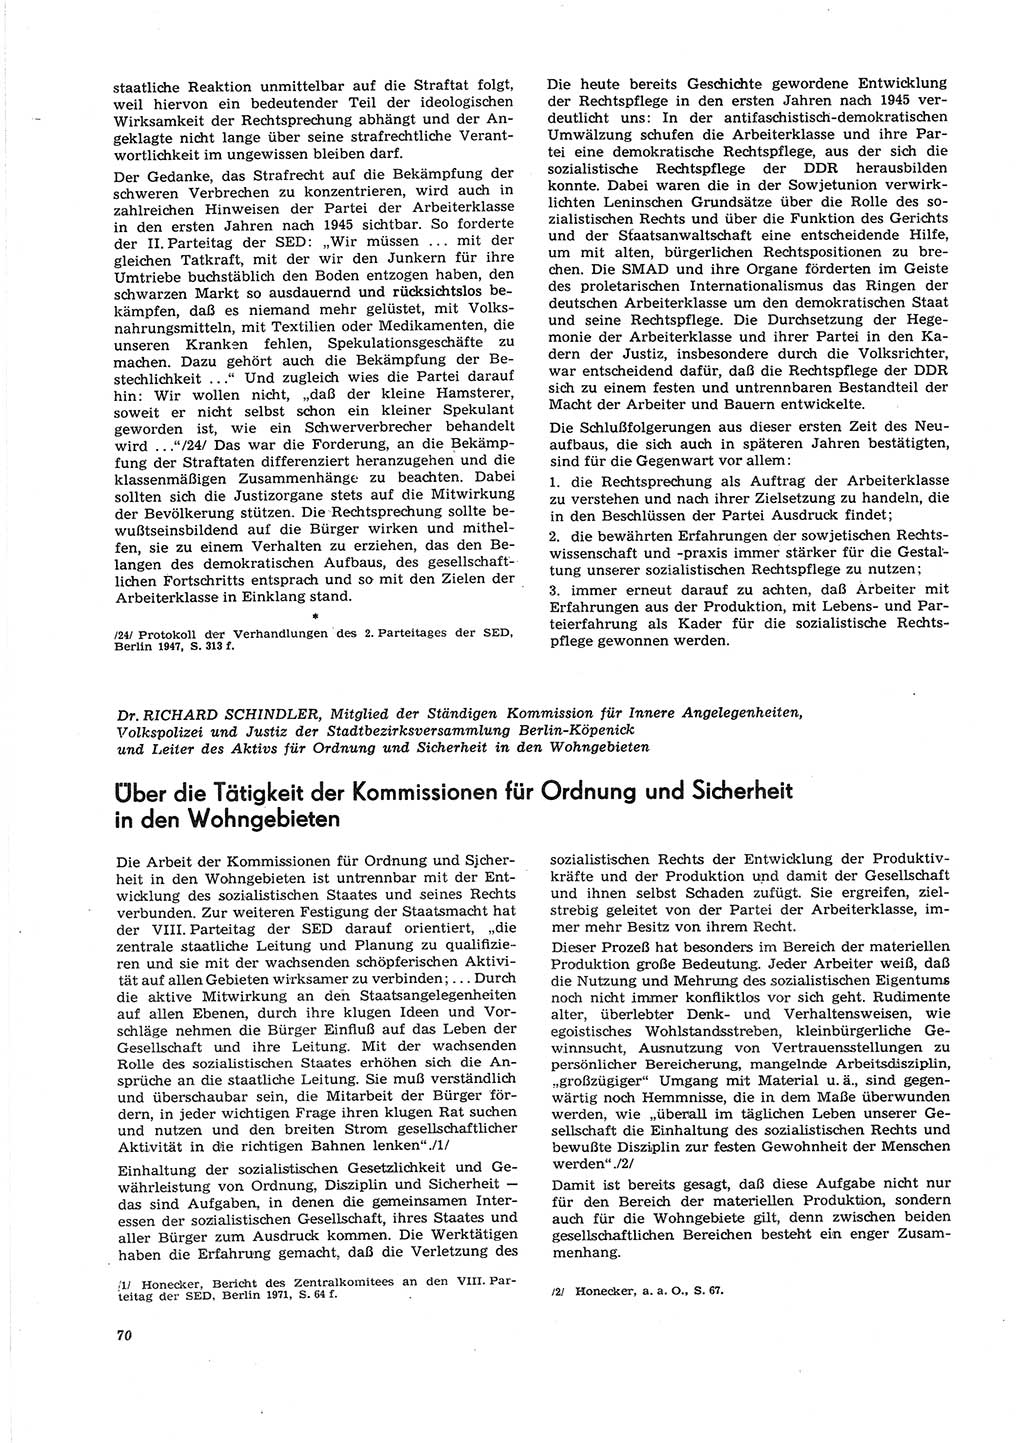 Neue Justiz (NJ), Zeitschrift für Recht und Rechtswissenschaft [Deutsche Demokratische Republik (DDR)], 27. Jahrgang 1973, Seite 70 (NJ DDR 1973, S. 70)